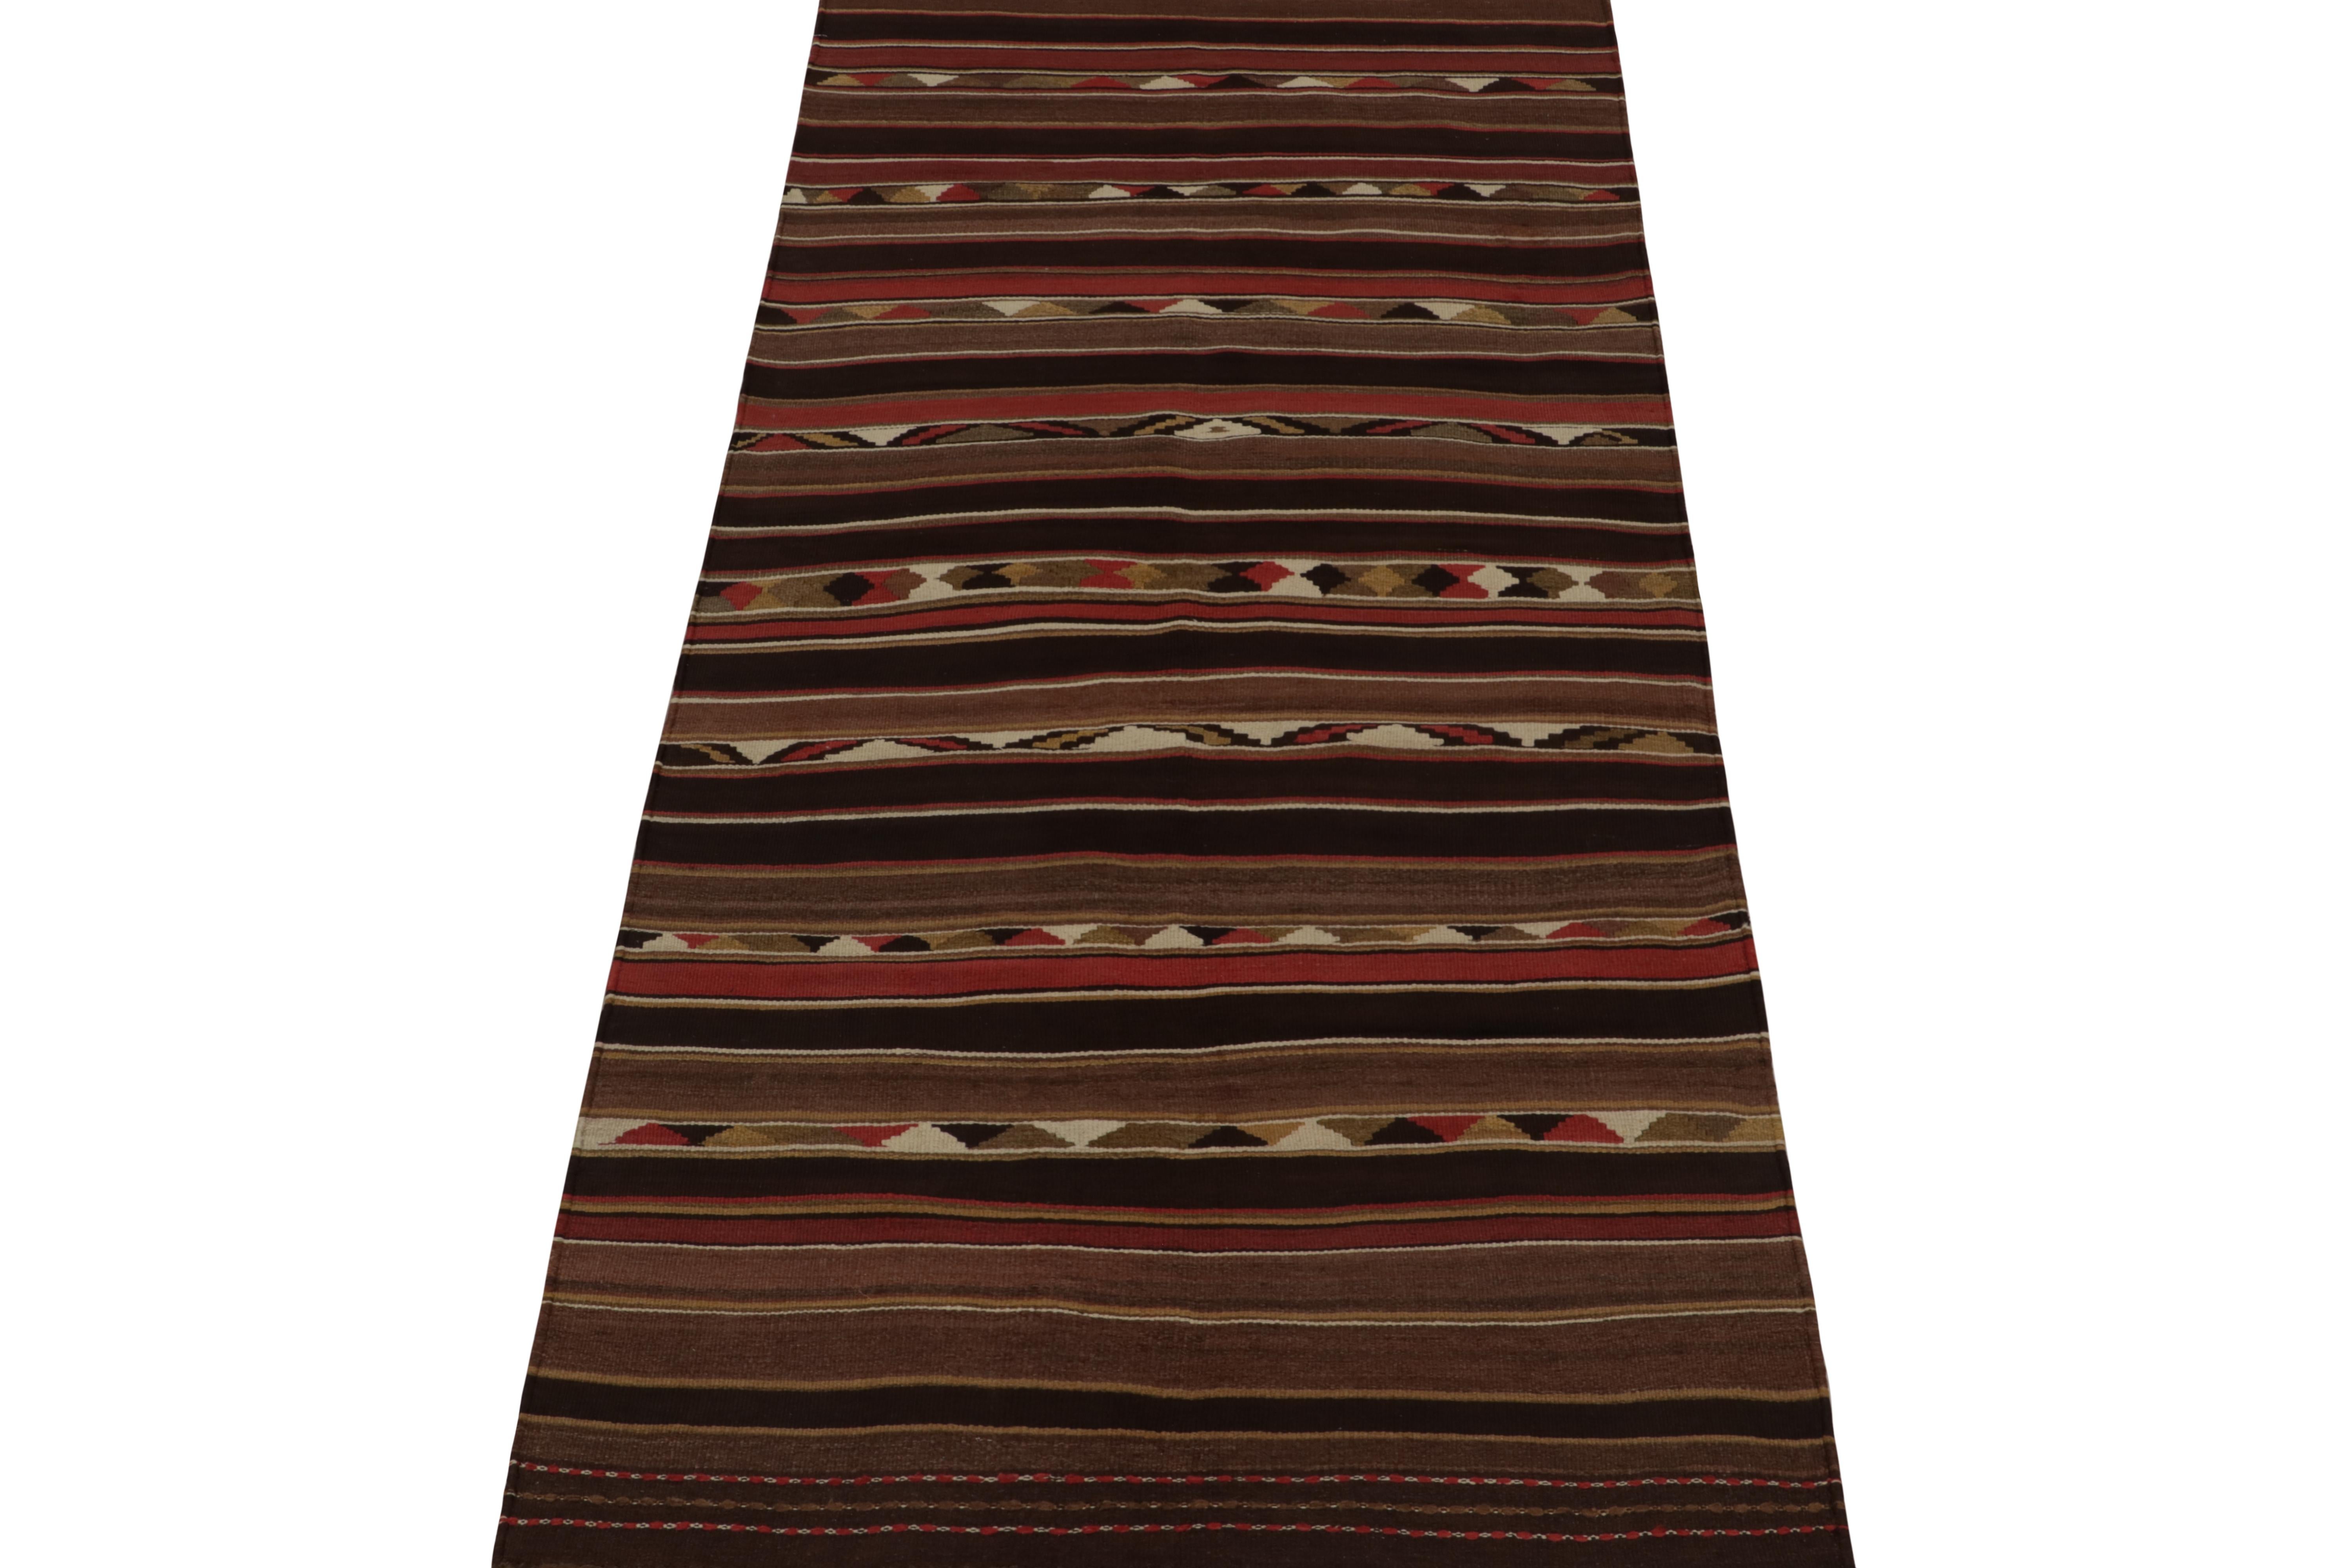 Ce kilim persan vintage 4x9 est une galerie tribale tissée à la main en laine vers 1950-1960.

Plus loin dans le Design :

Ce motif simple présente de subtiles complexités dans son jeu de rayures et de motifs géométriques, avec des couleurs riches